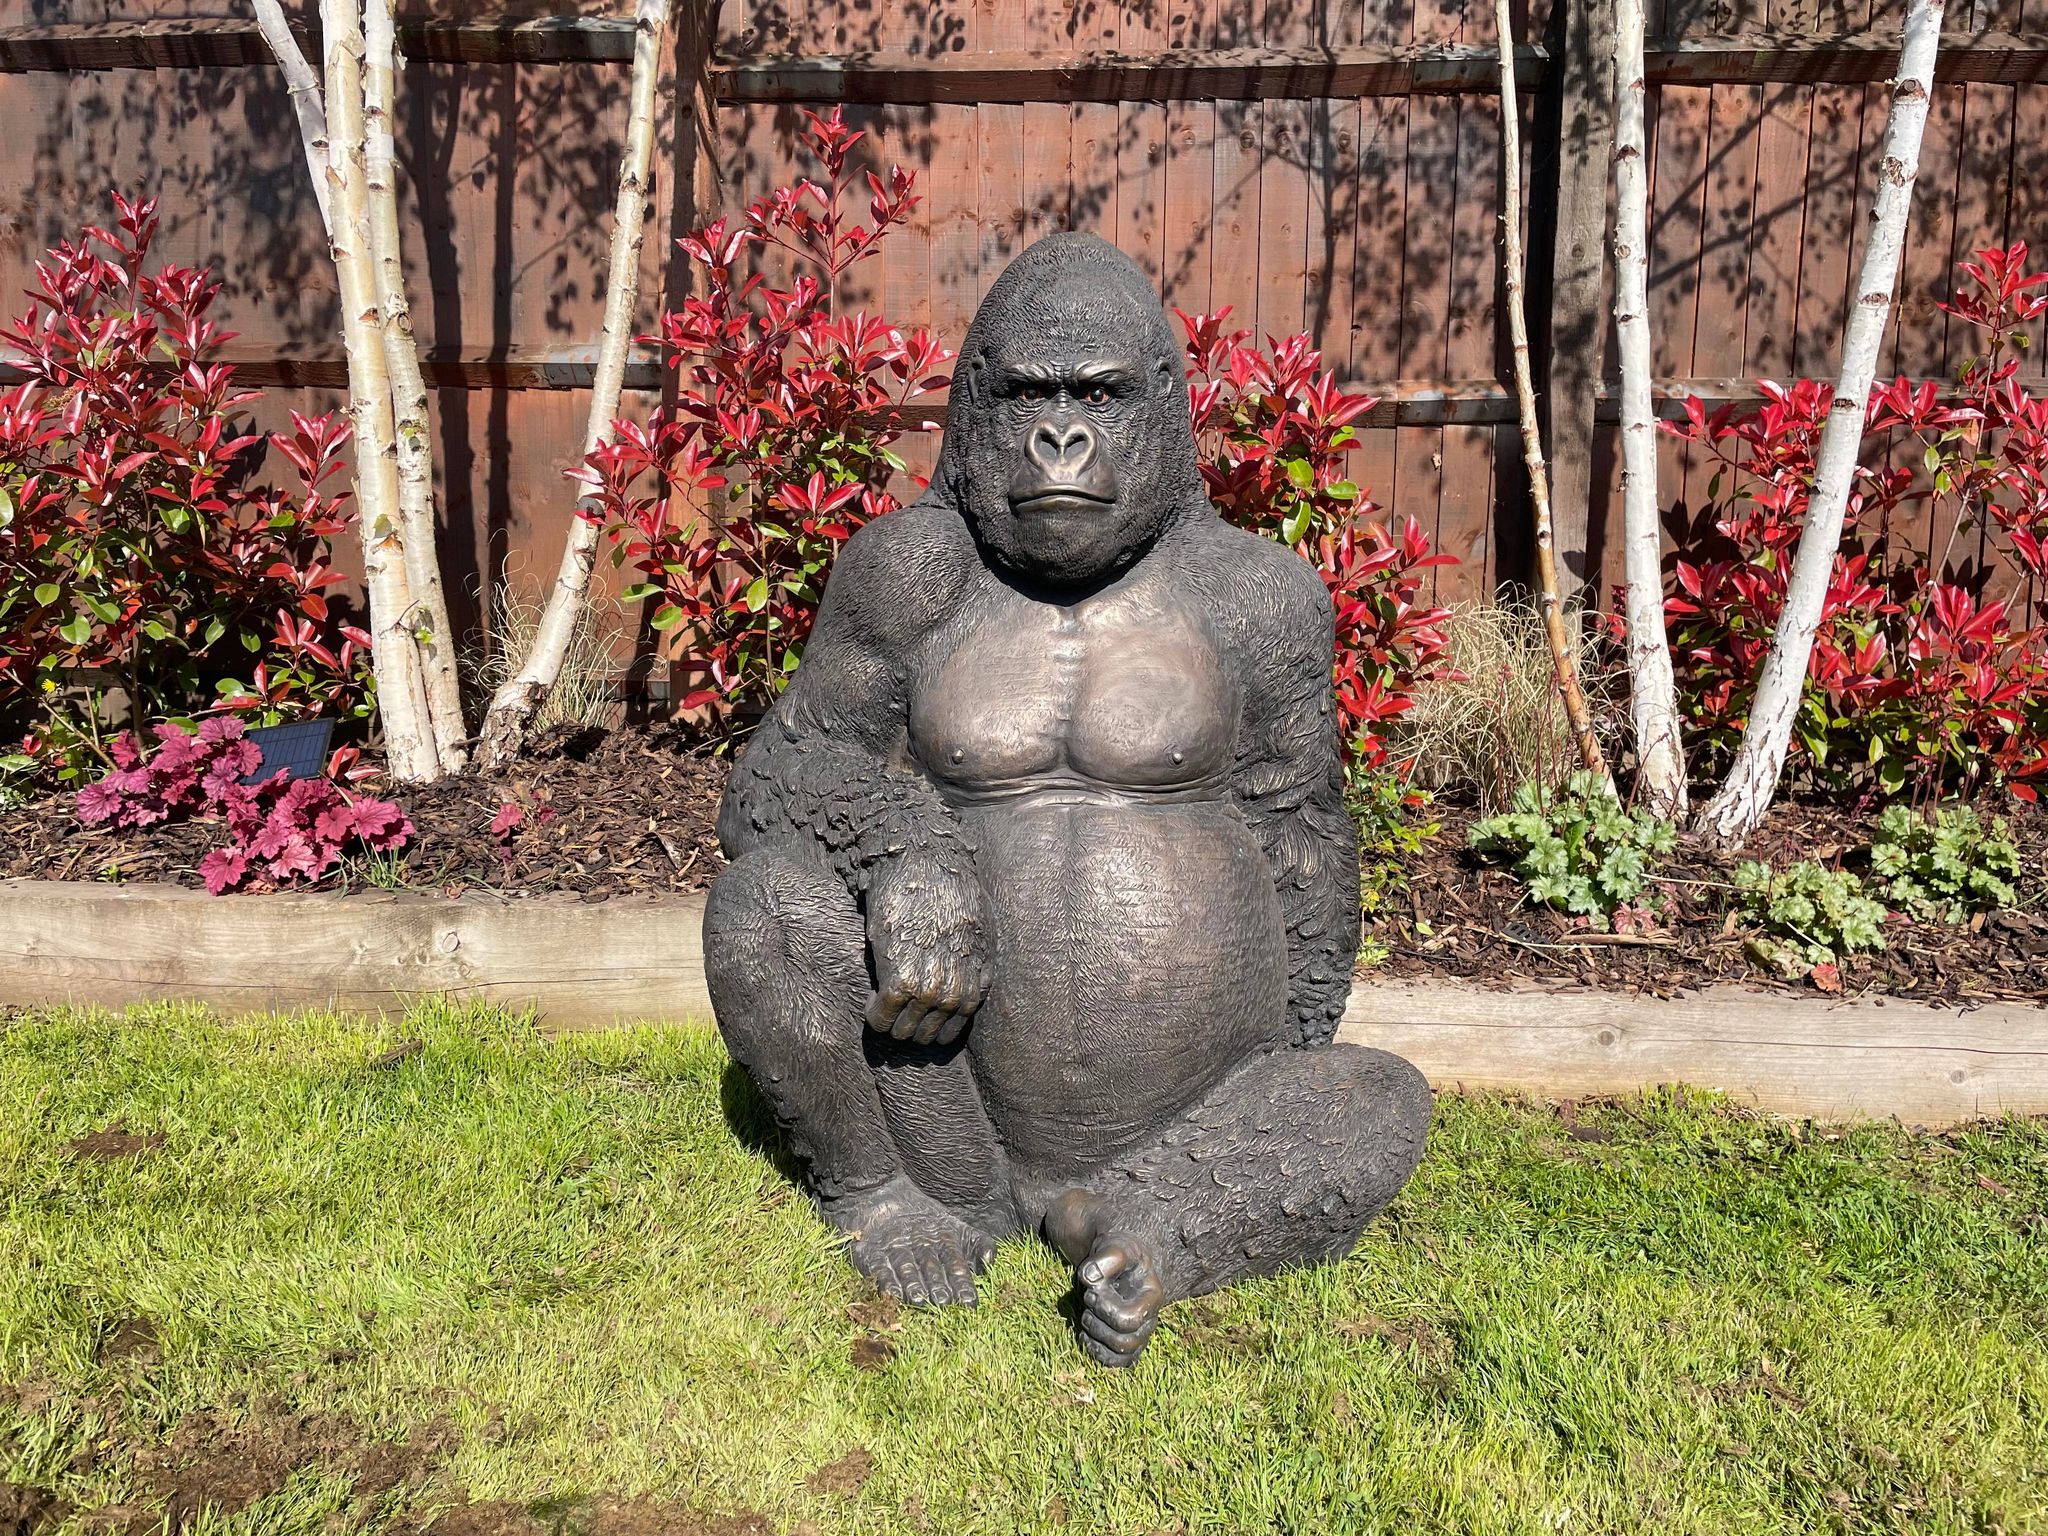 Life-Size Gorilla Statue